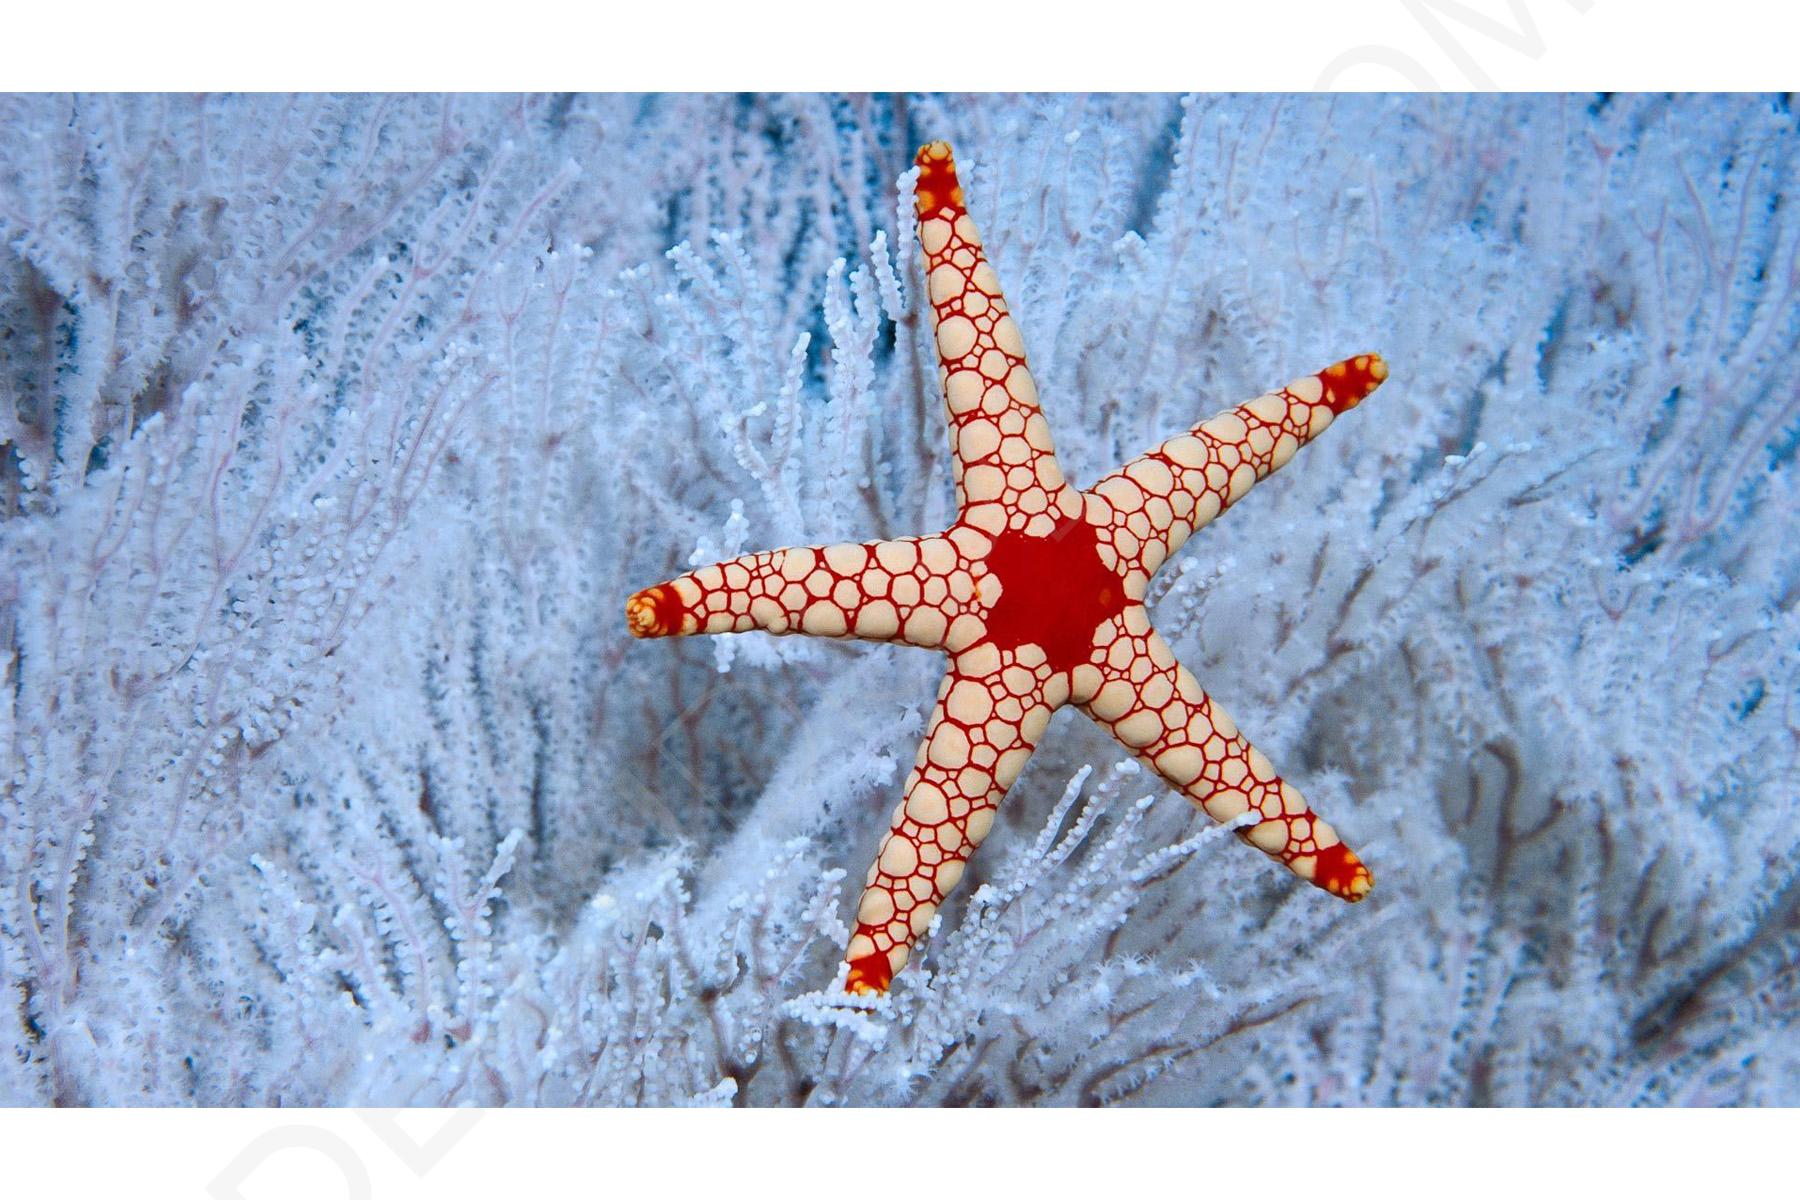 Найти морскую звезду. Солястер морская звезда. Говлит морская звезда. Морская звезда красивая. Необычные морские звезды.